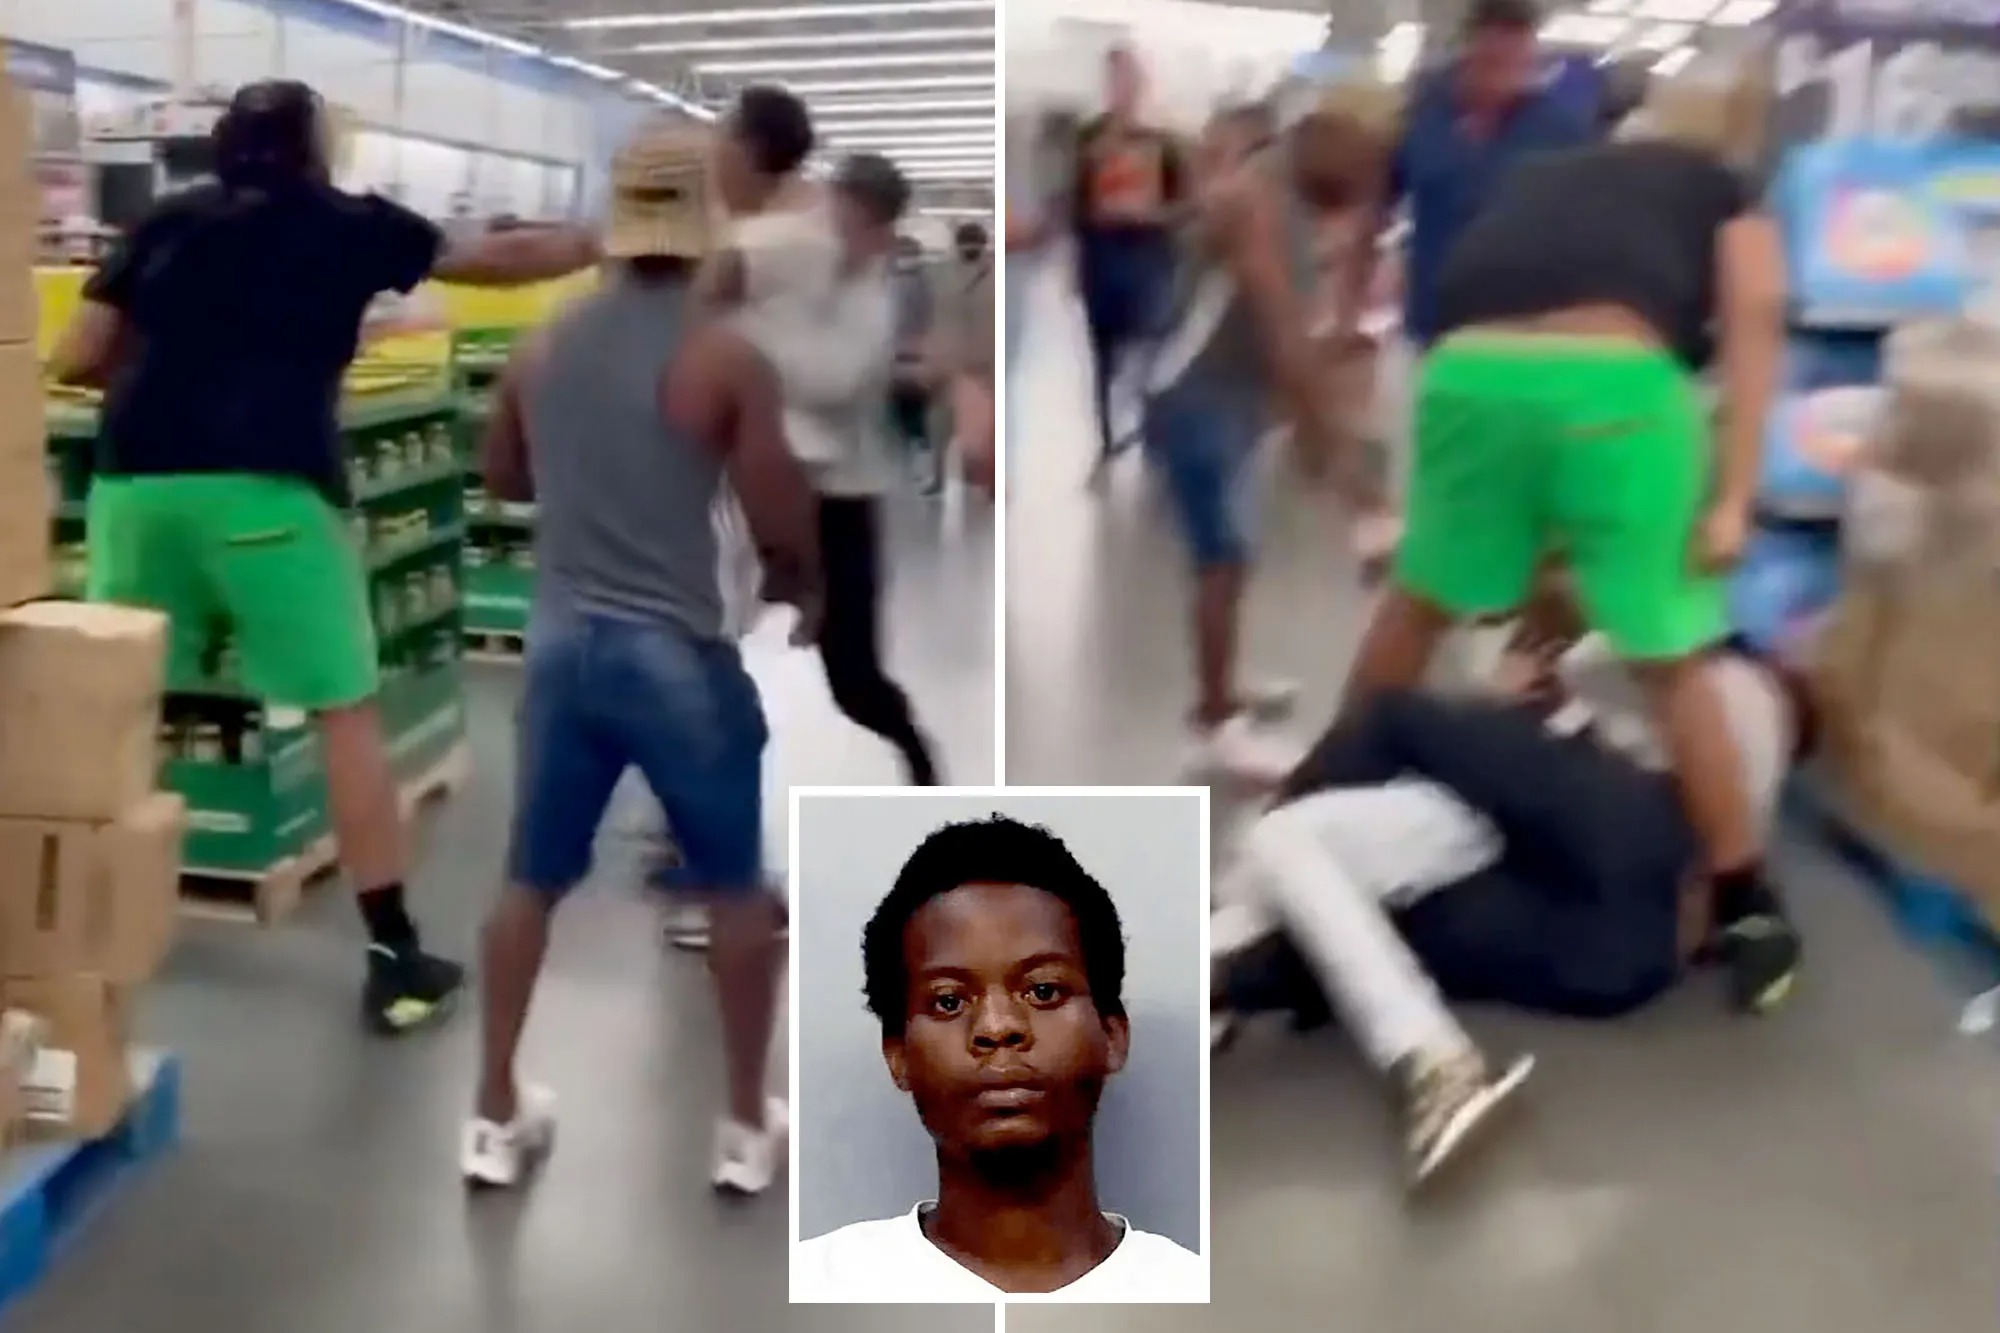 Le desgarró la ropa interior: Aberrado intentó violar a mujer pero fue detenido por clientes de un Walmart (VIDEO)